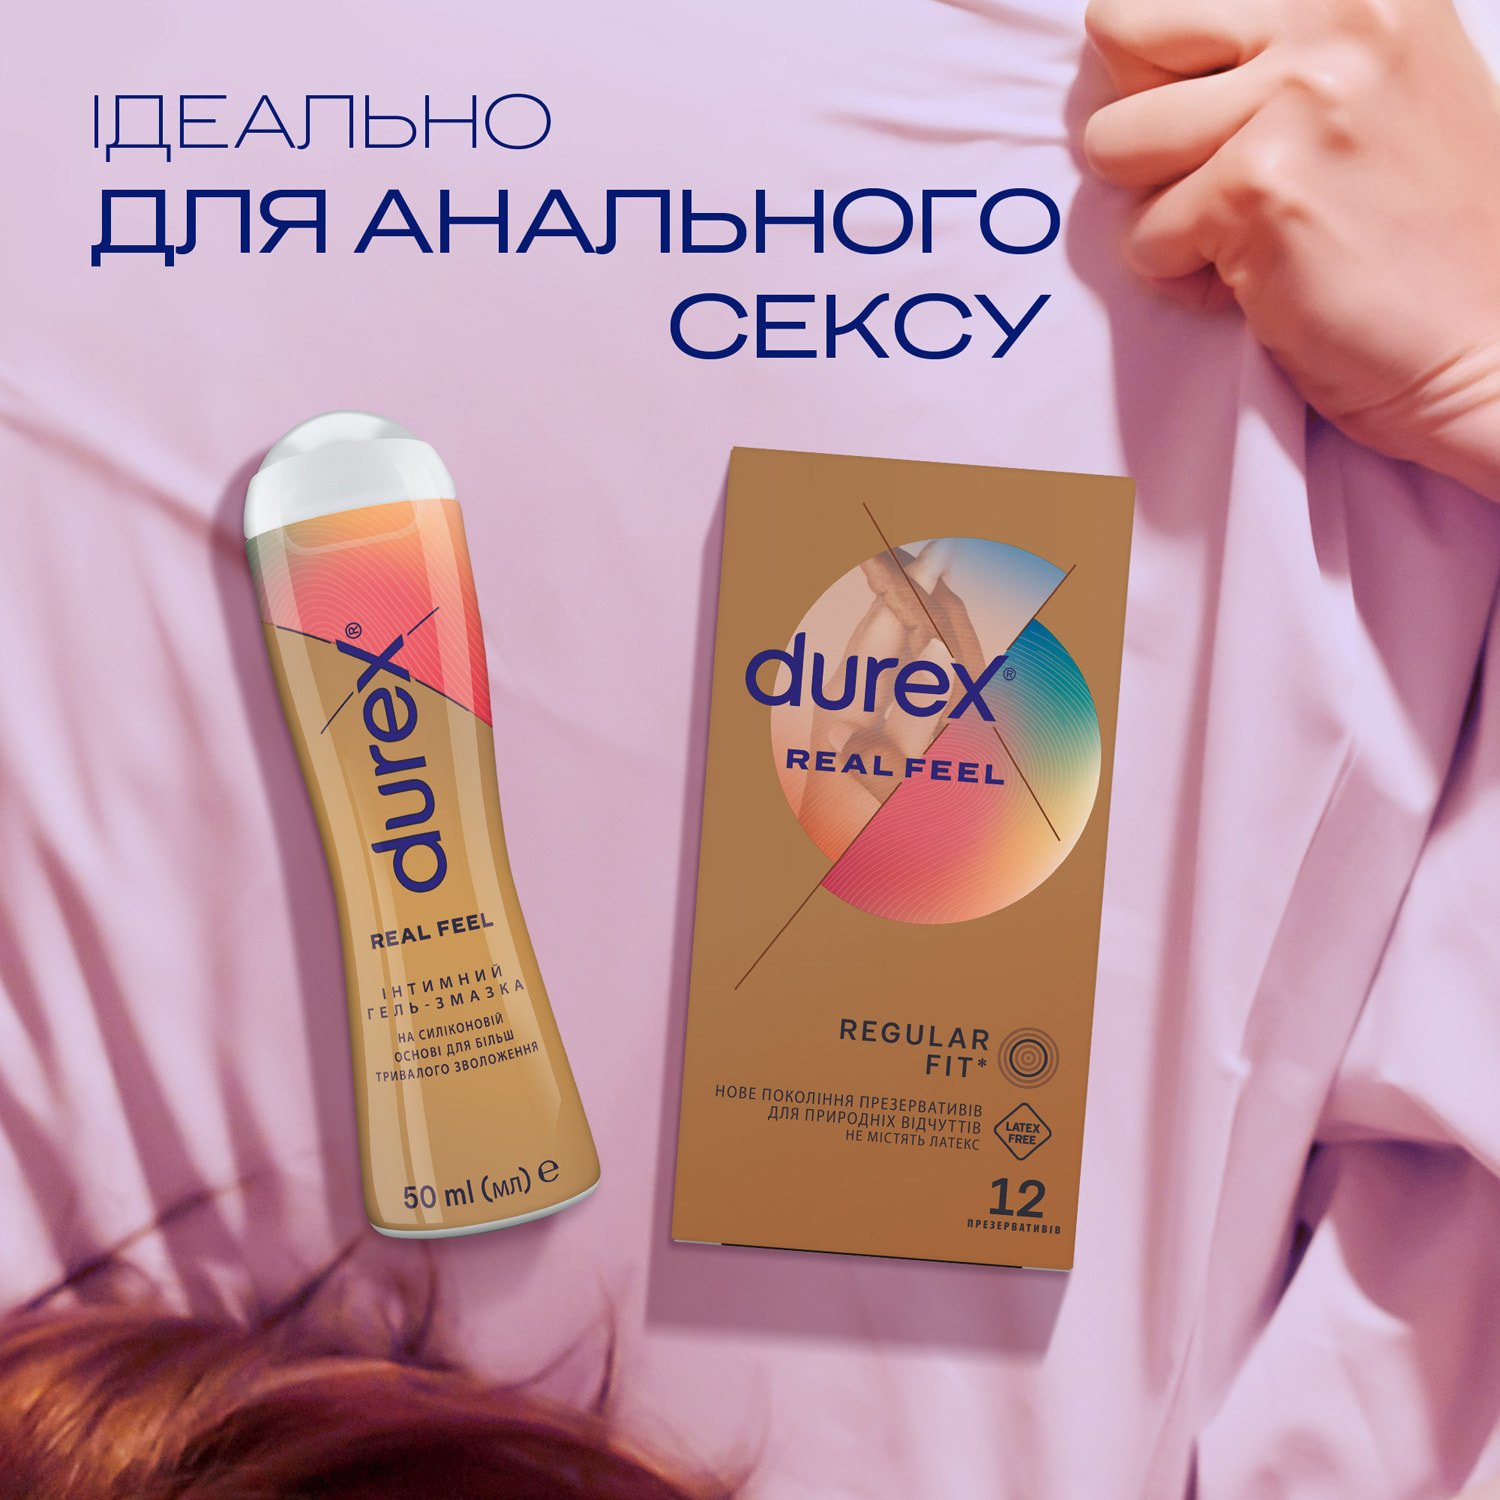 Интимный гель-смазка Durex Real Feel для анального секса на силиконовой основе (лубрикант), 50 мл (3037096) - фото 5